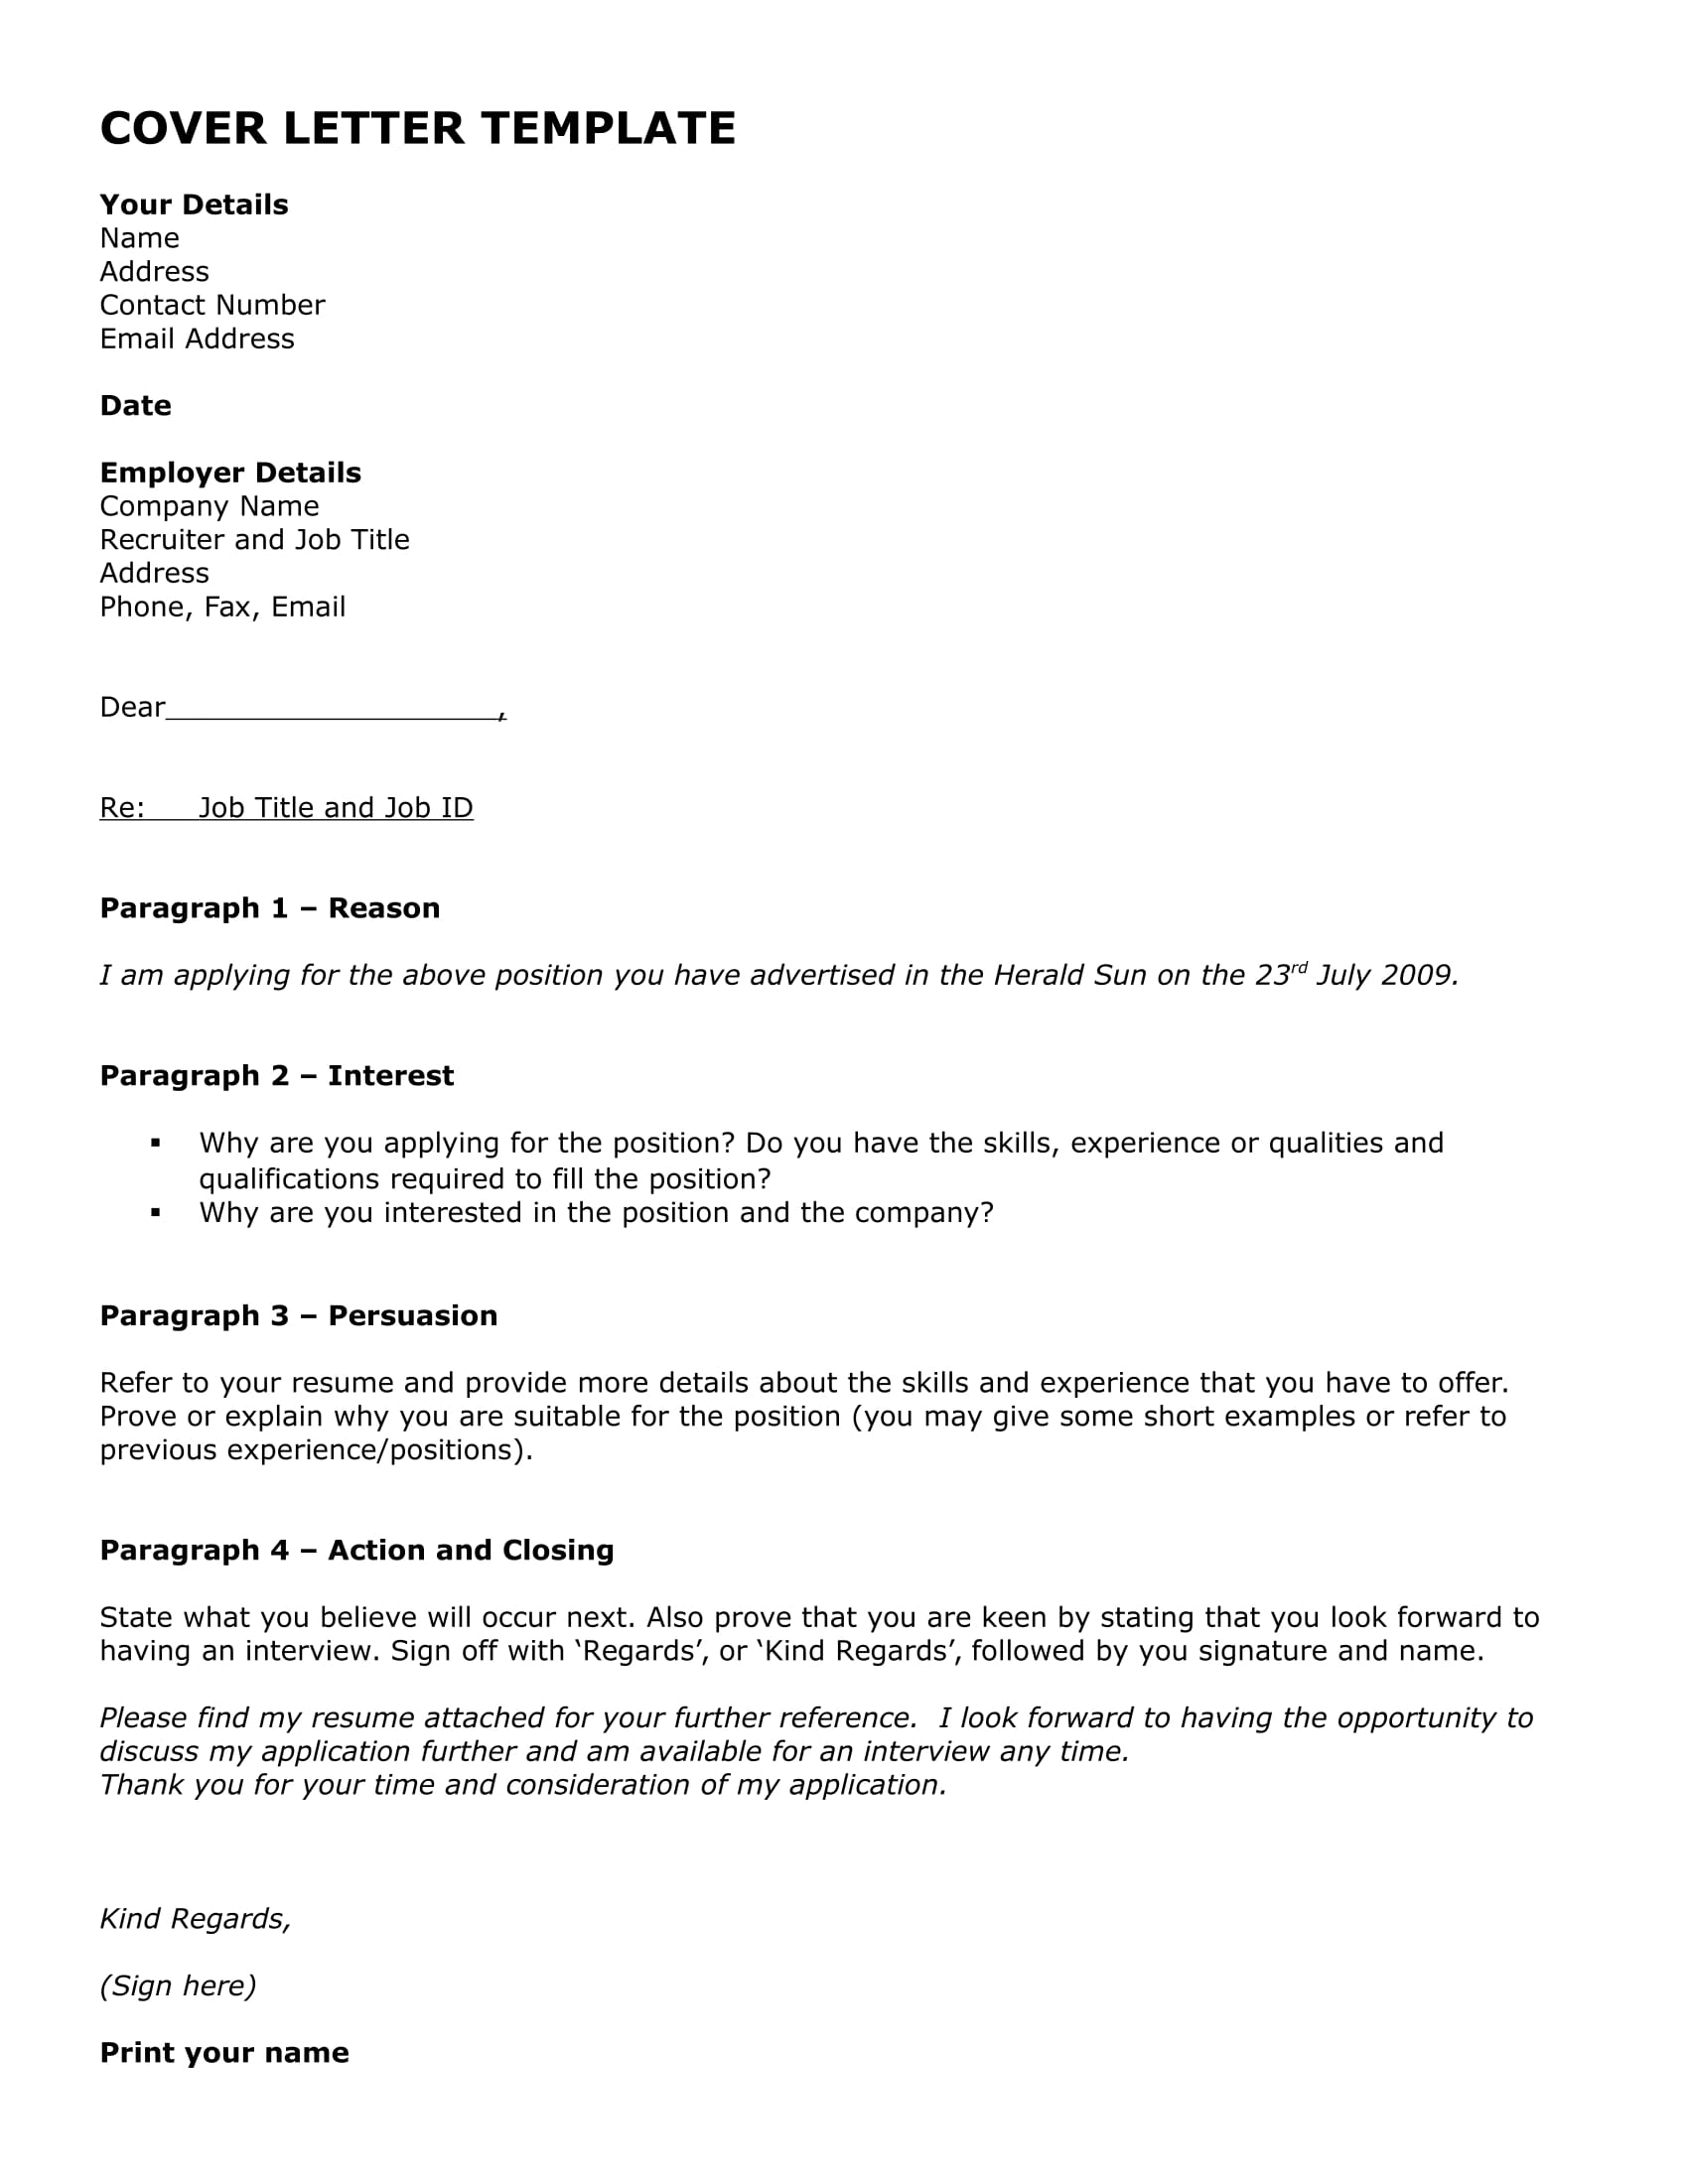 Sample standard cover letter for job application